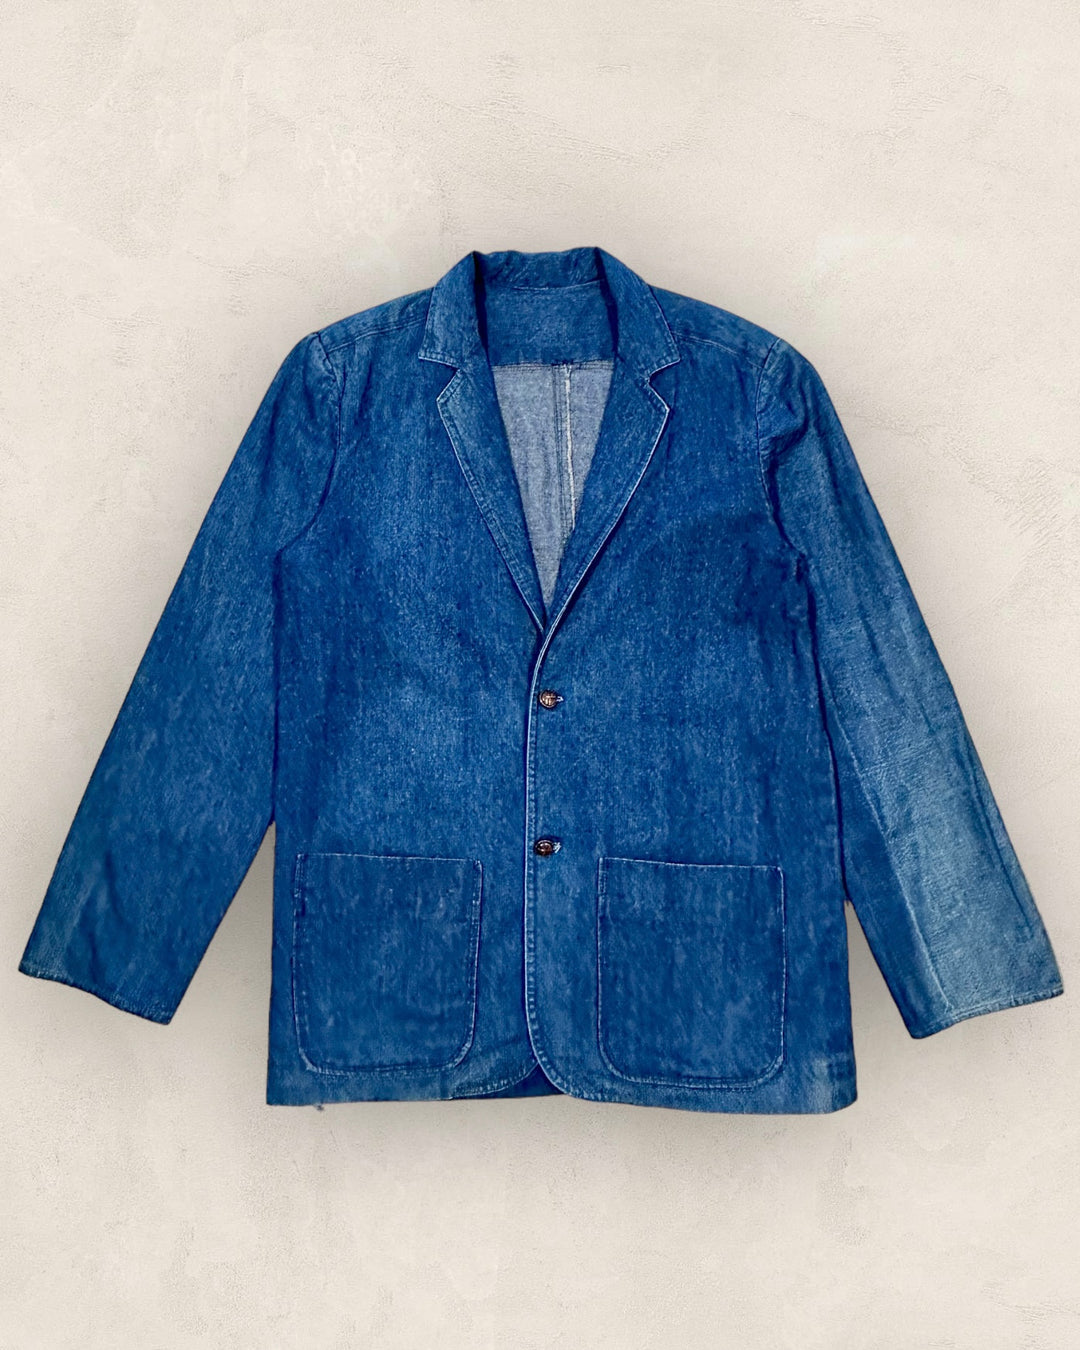 Denim blazer jacket - Size M/L